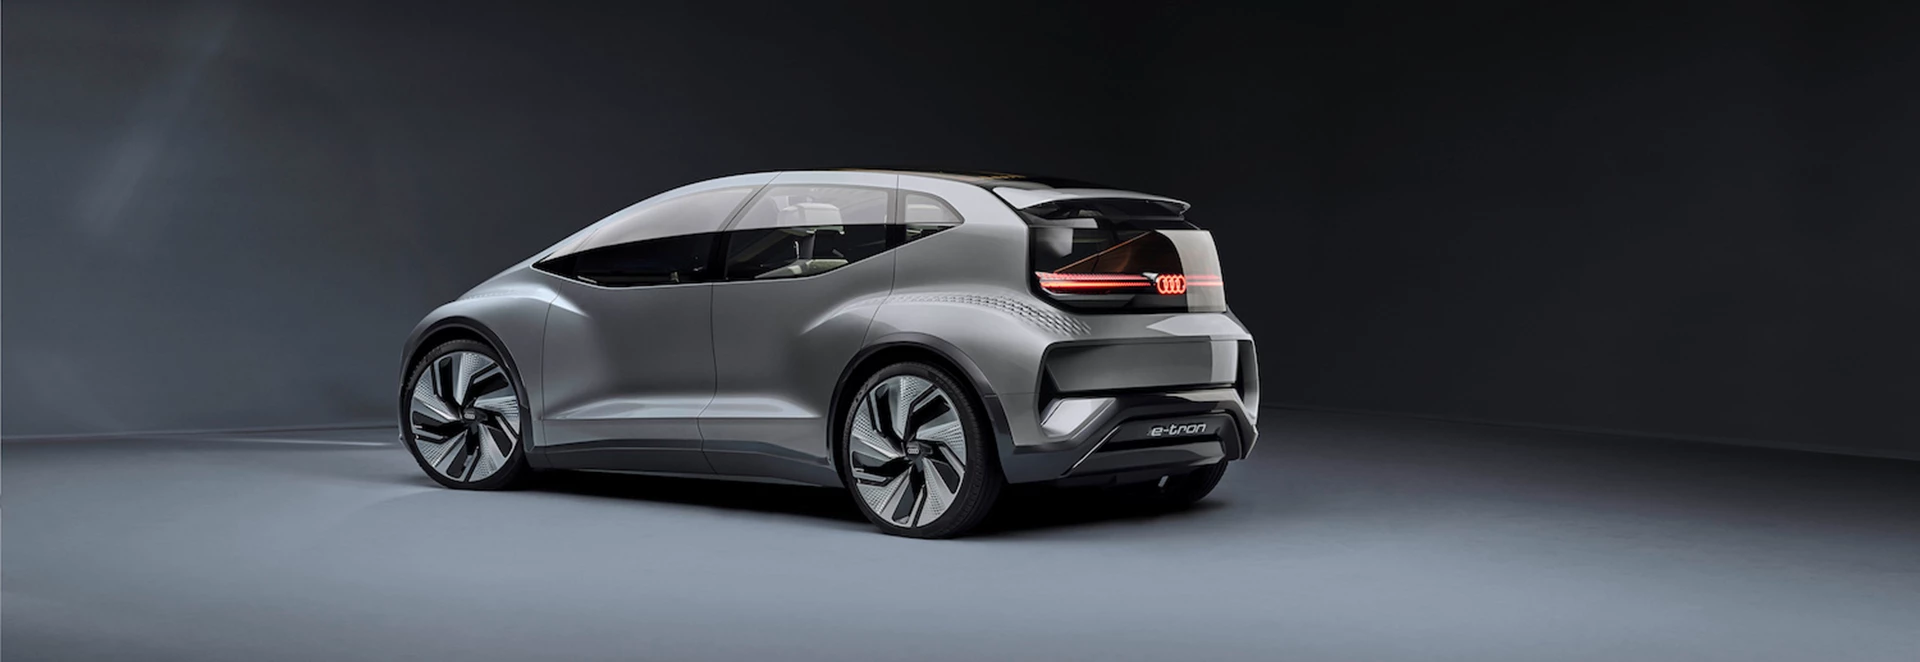 Audi reveals AI:ME autonomous vehicle